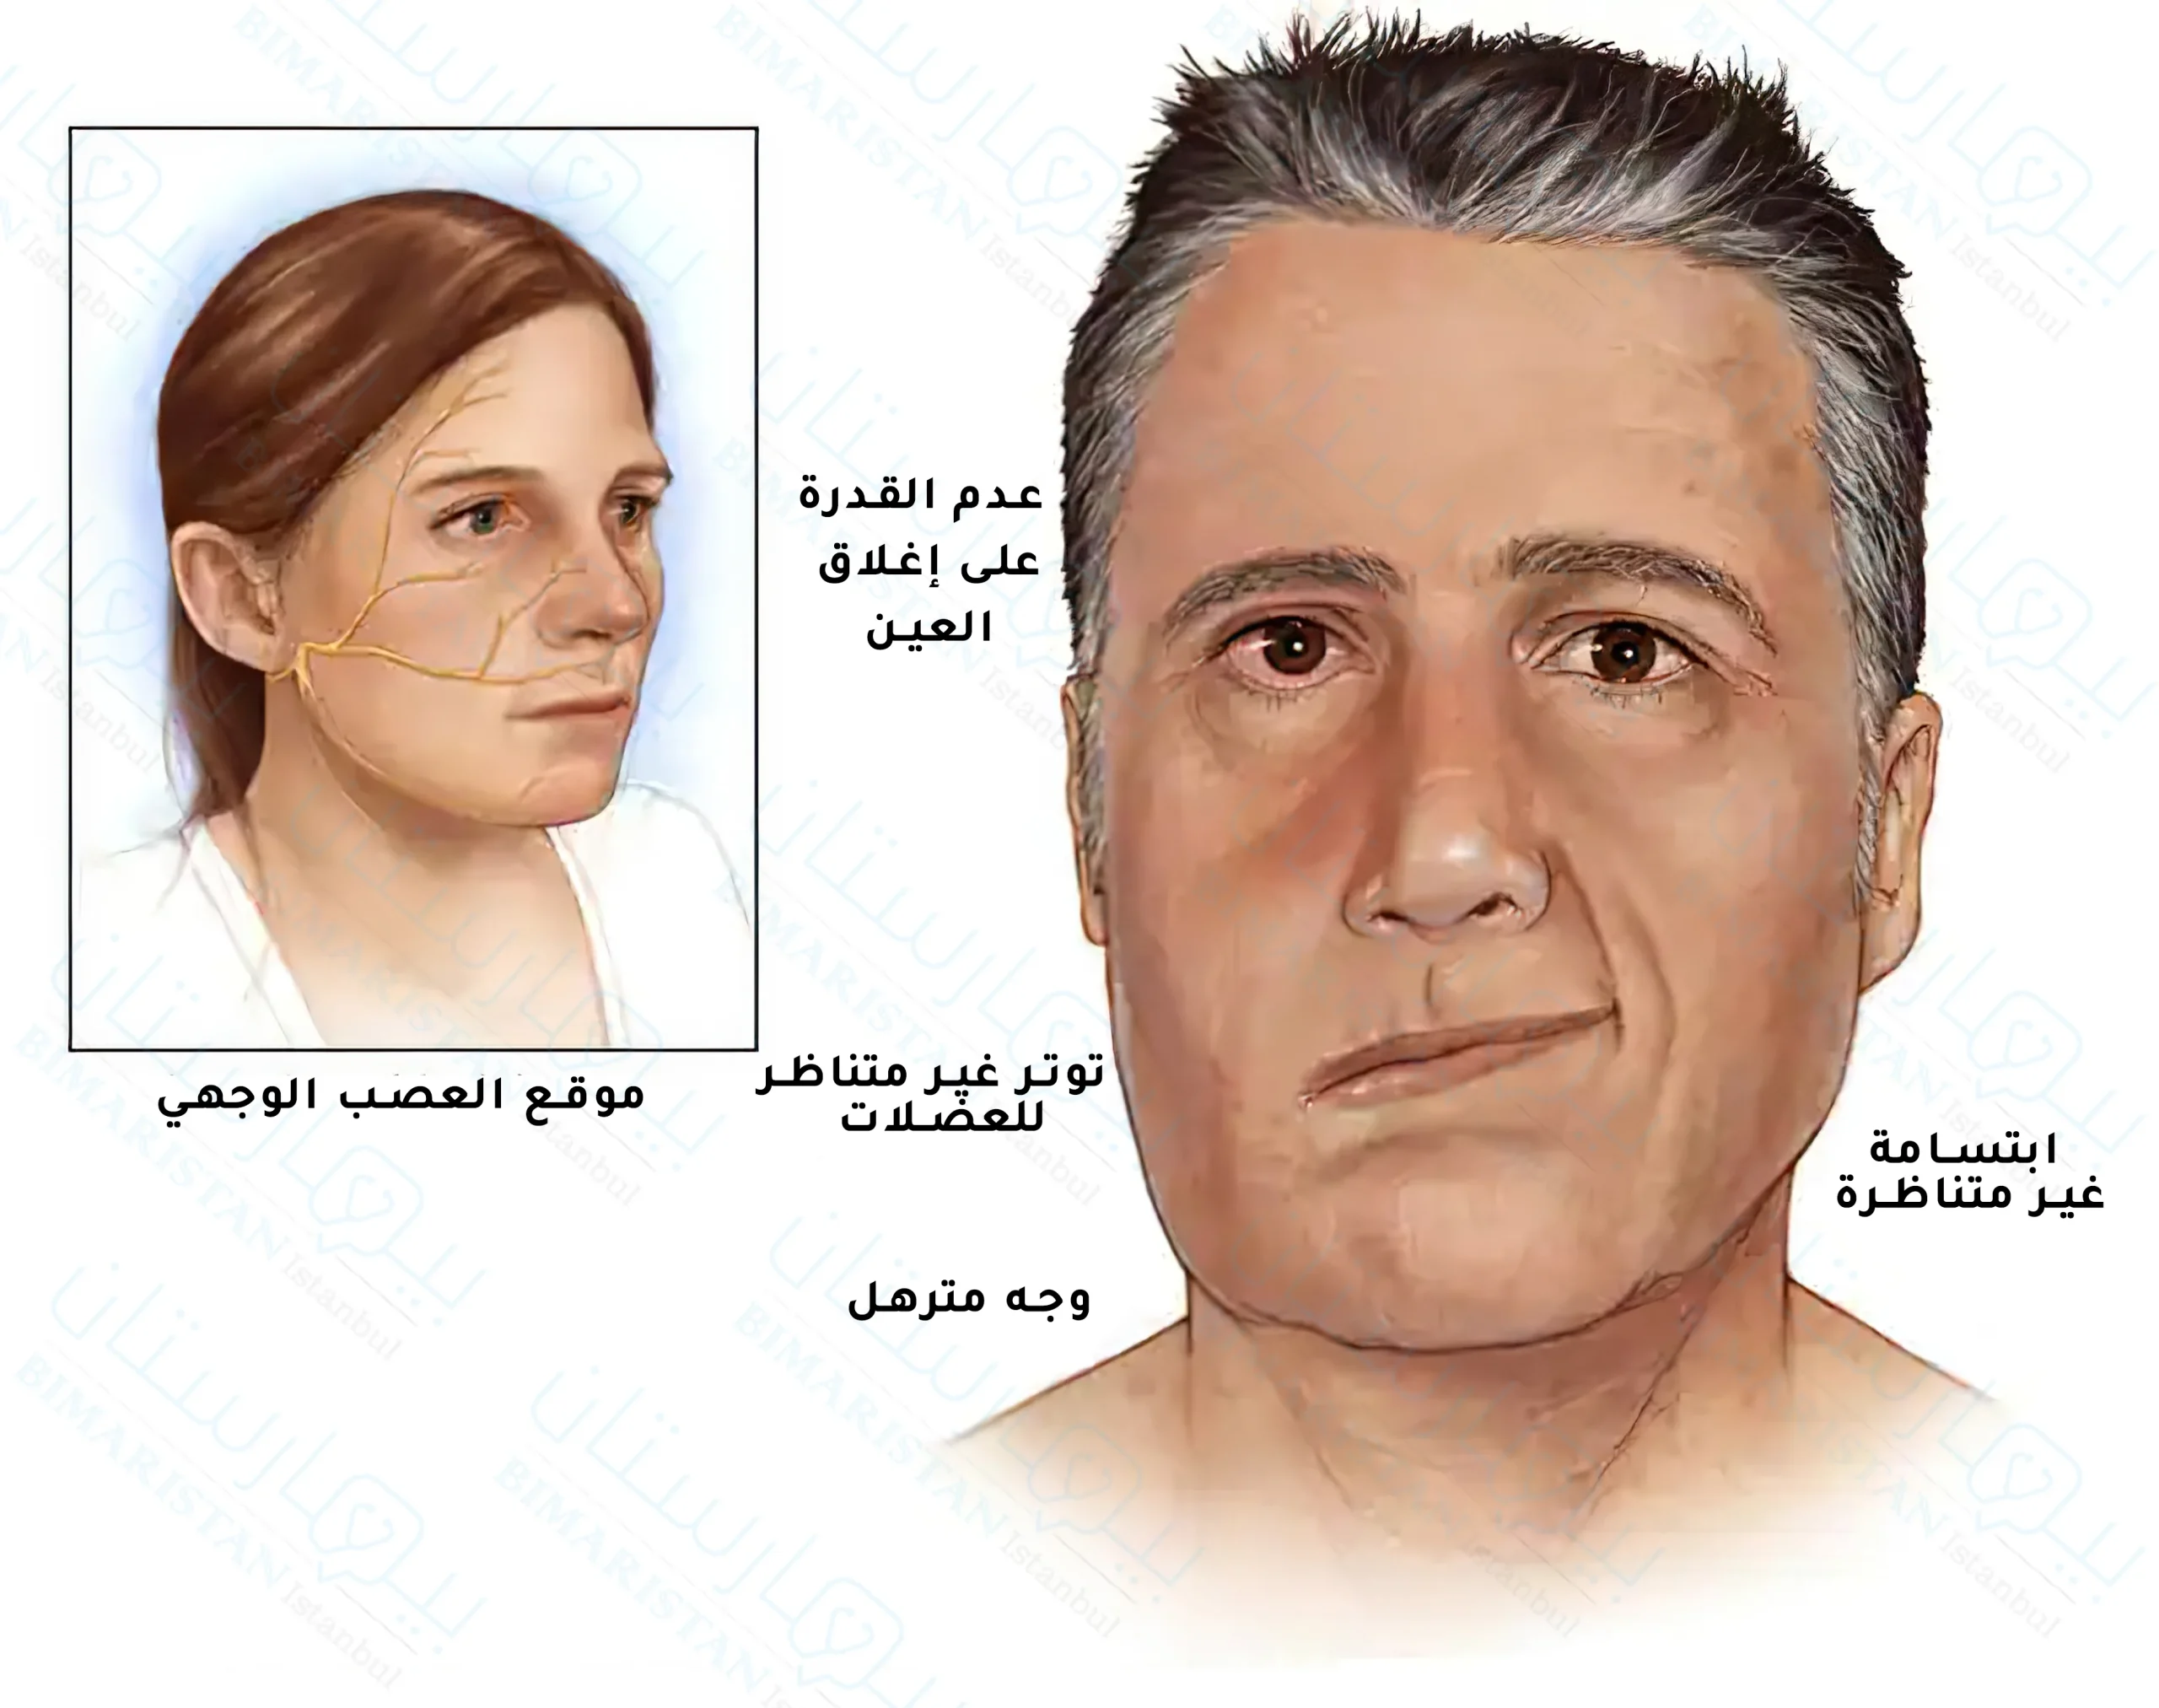 Facial nerve and paralysis